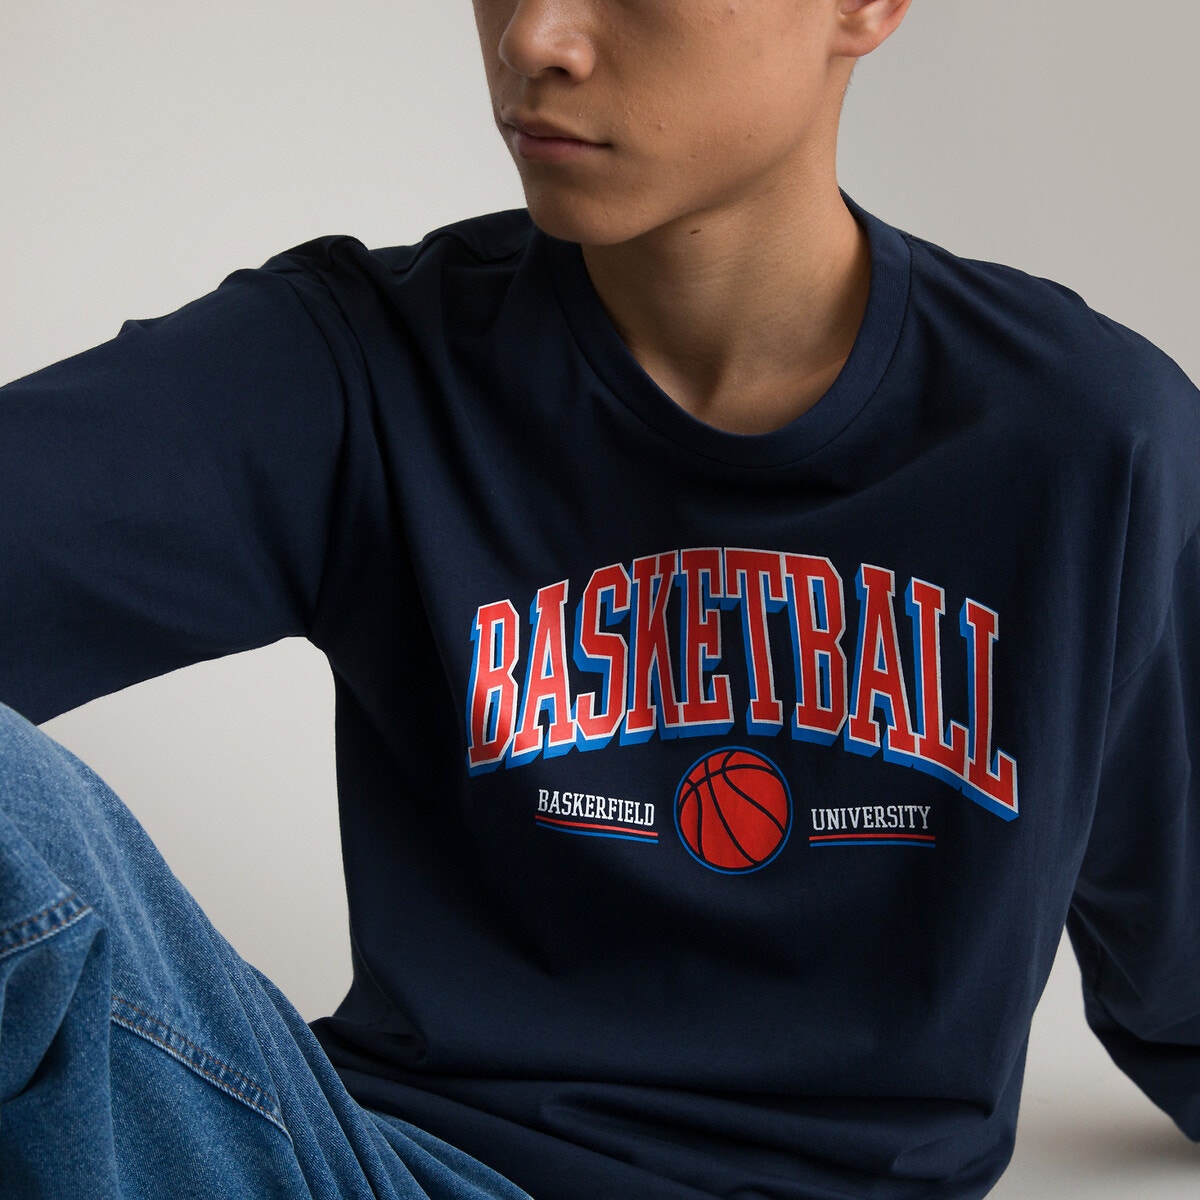 Μόδα > Παιδικά > Αγόρι > T-shirt, πόλο > Μακριά μανίκια Μακρυμάνικη μπλούζα με στάμπα Basketball